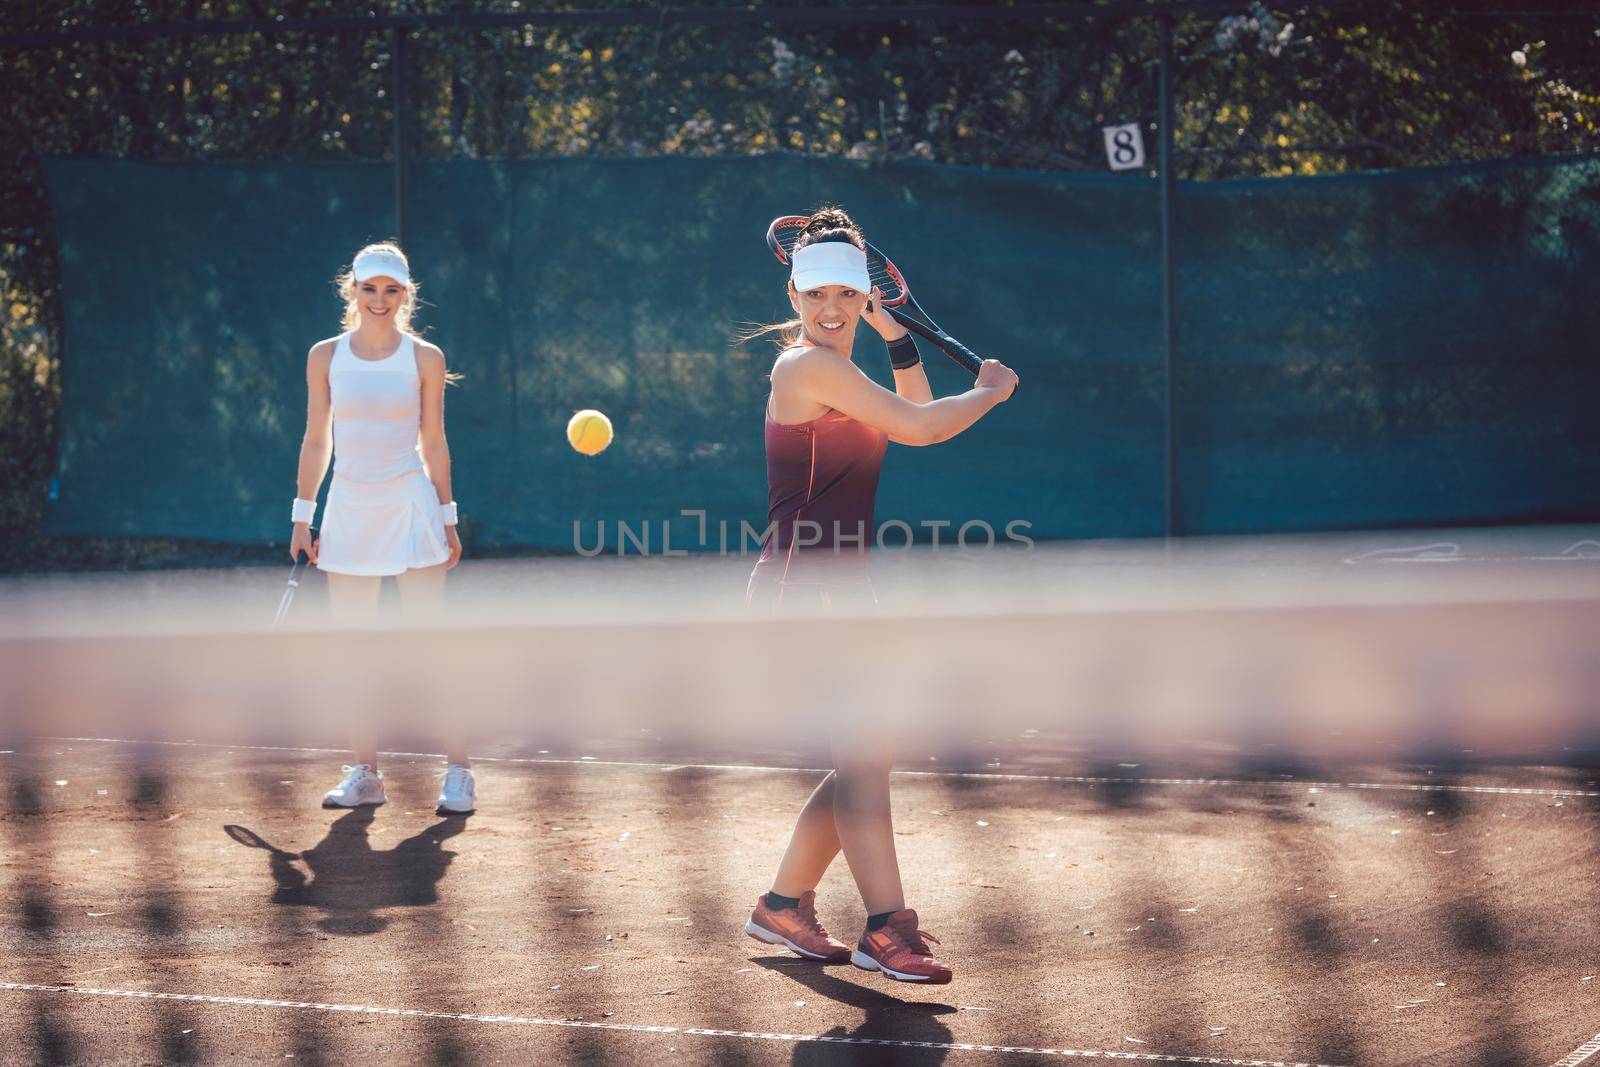 Woman in a tennis double by Kzenon